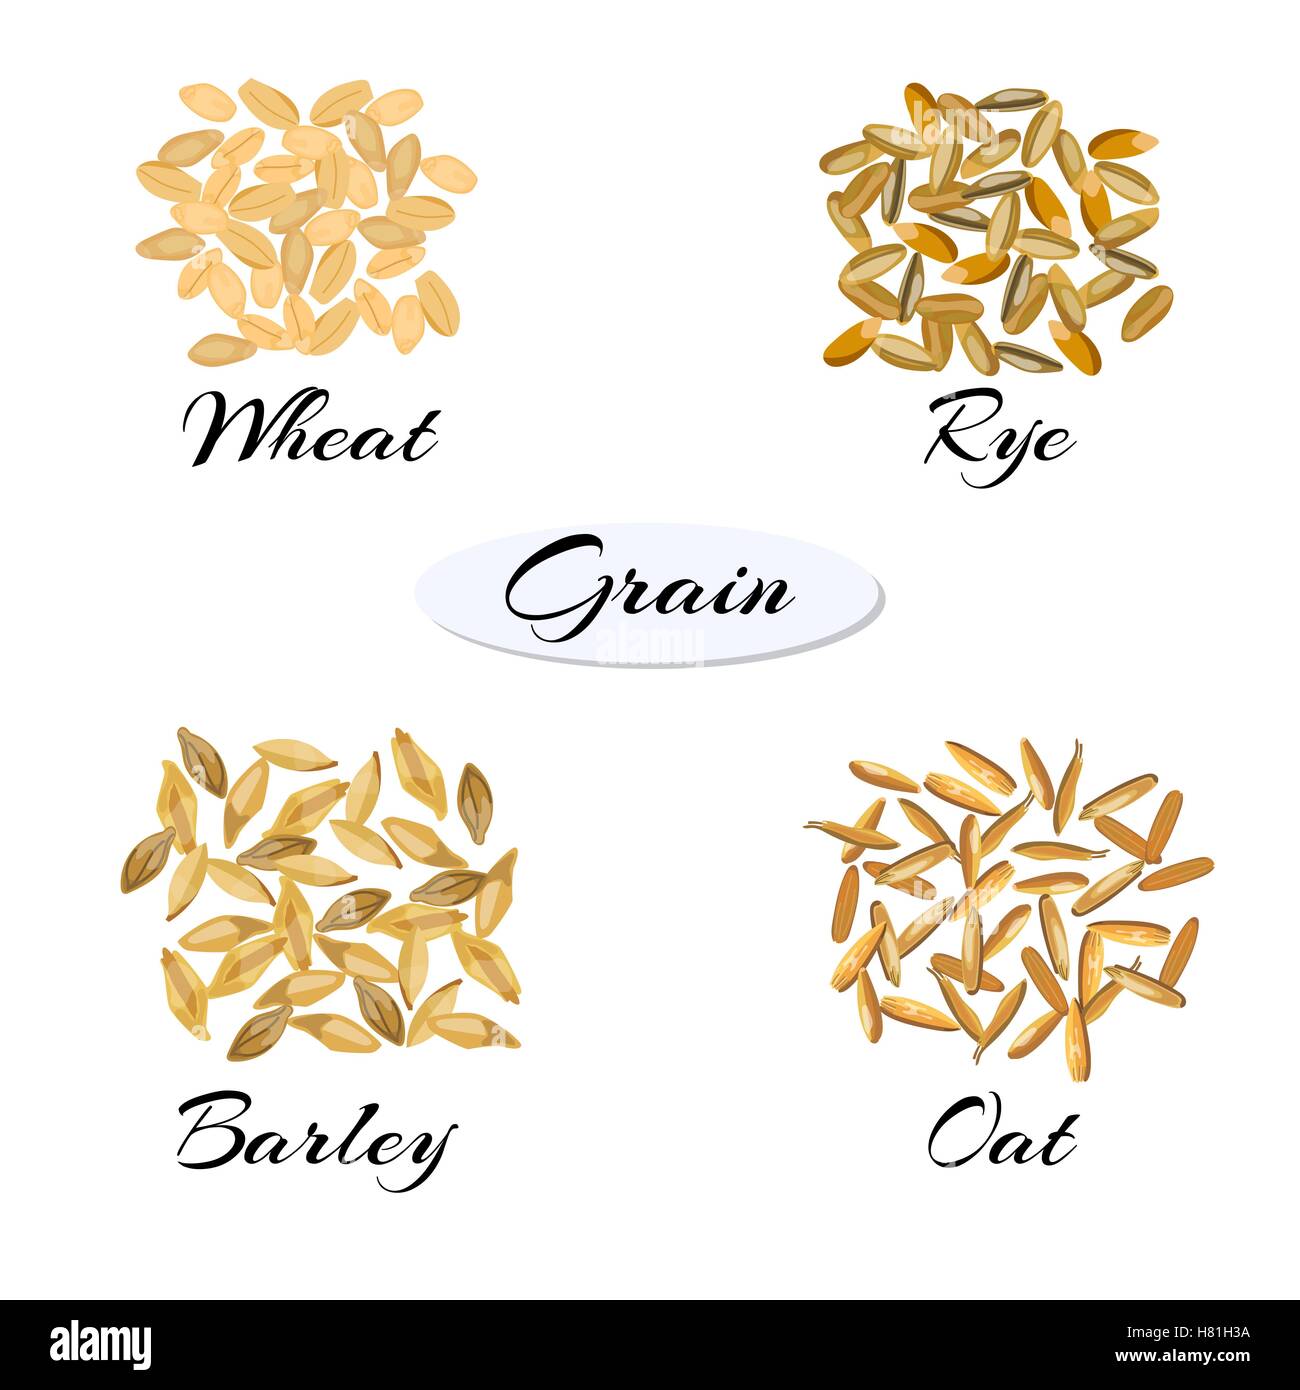 Getreide. Verschiedene Arten von Getreide. Vektor-Illustration EPS 10. Stock Vektor